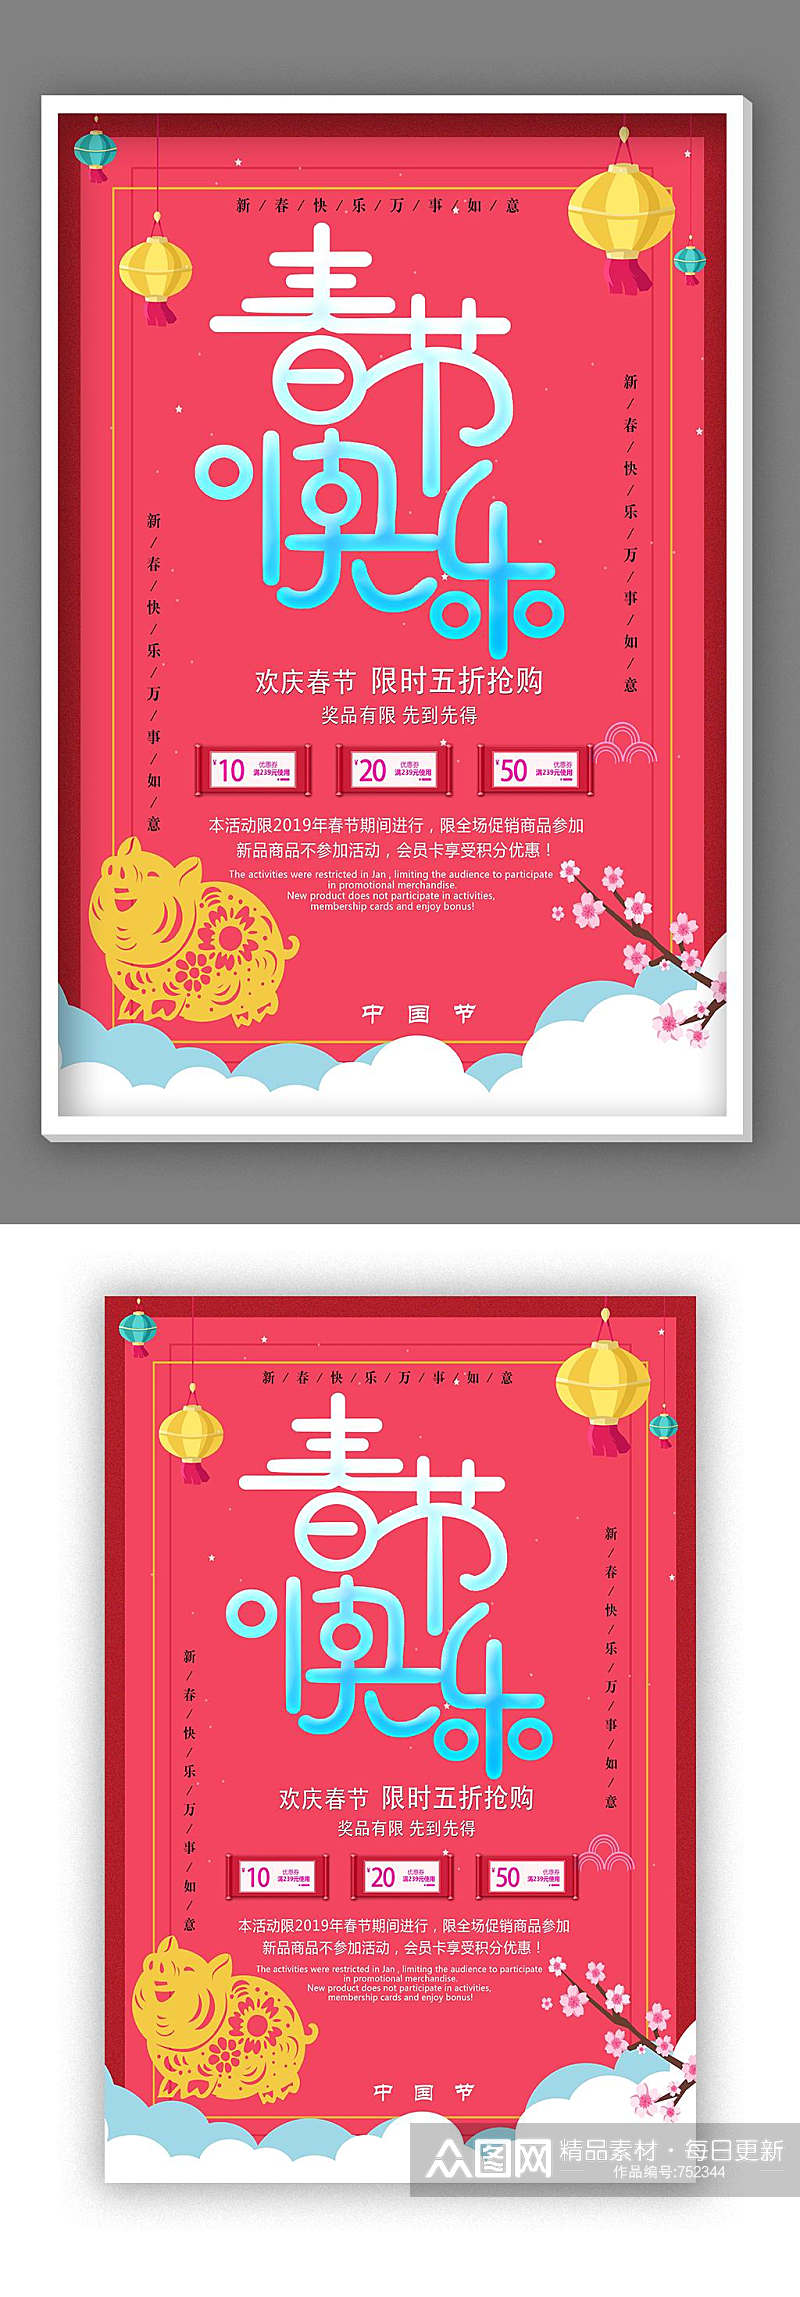 春节年货节海报设计素材